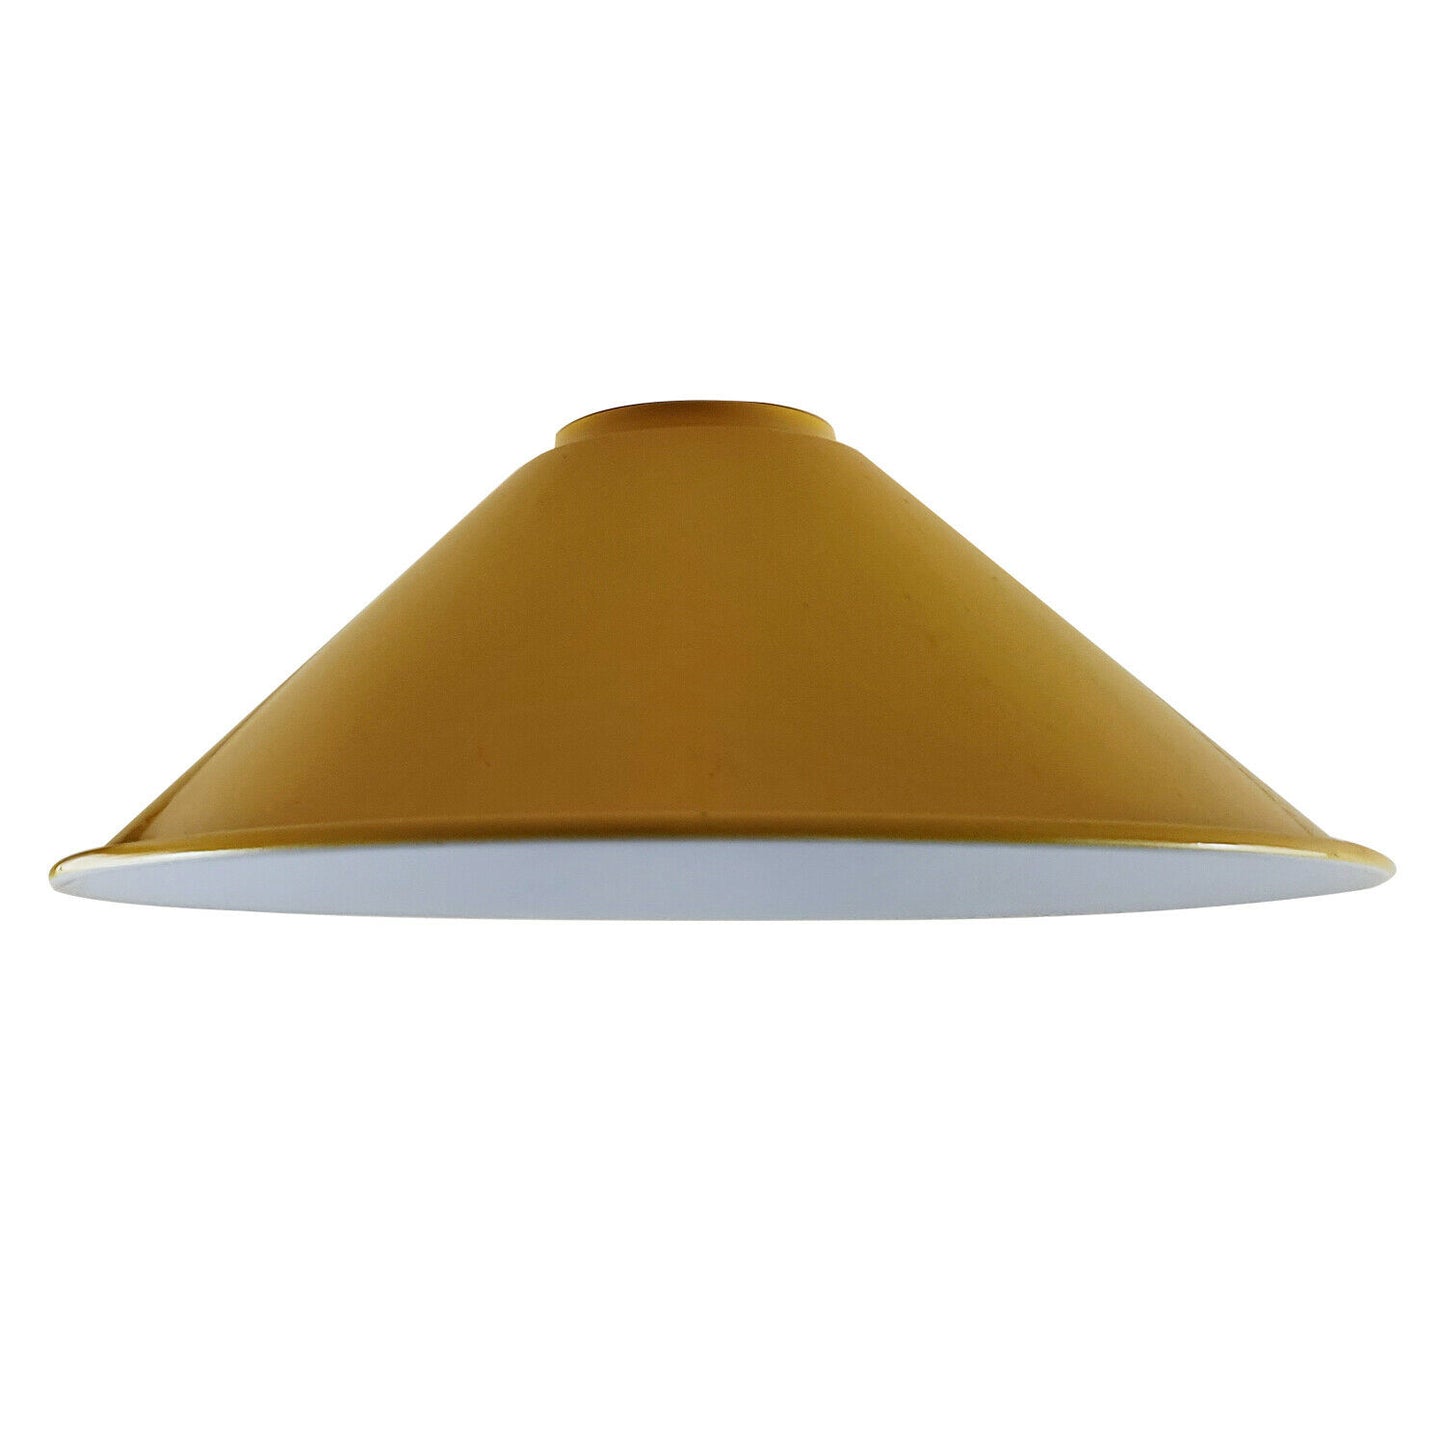 lamp shade for pendant light